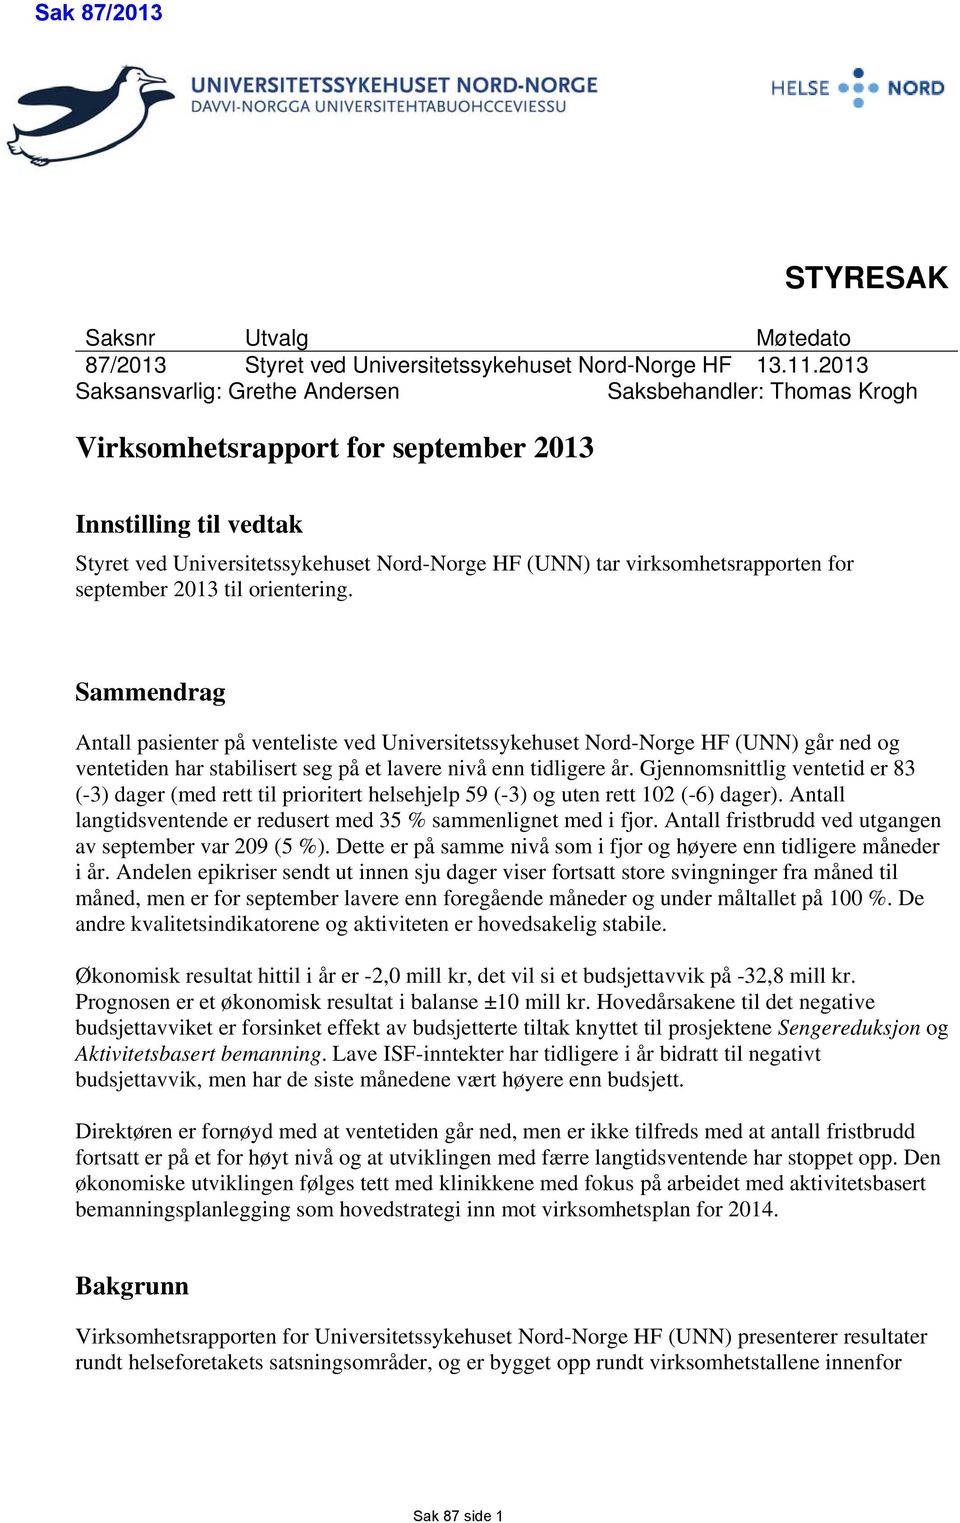 virksomhetsrapporten for september 2013 til orientering.